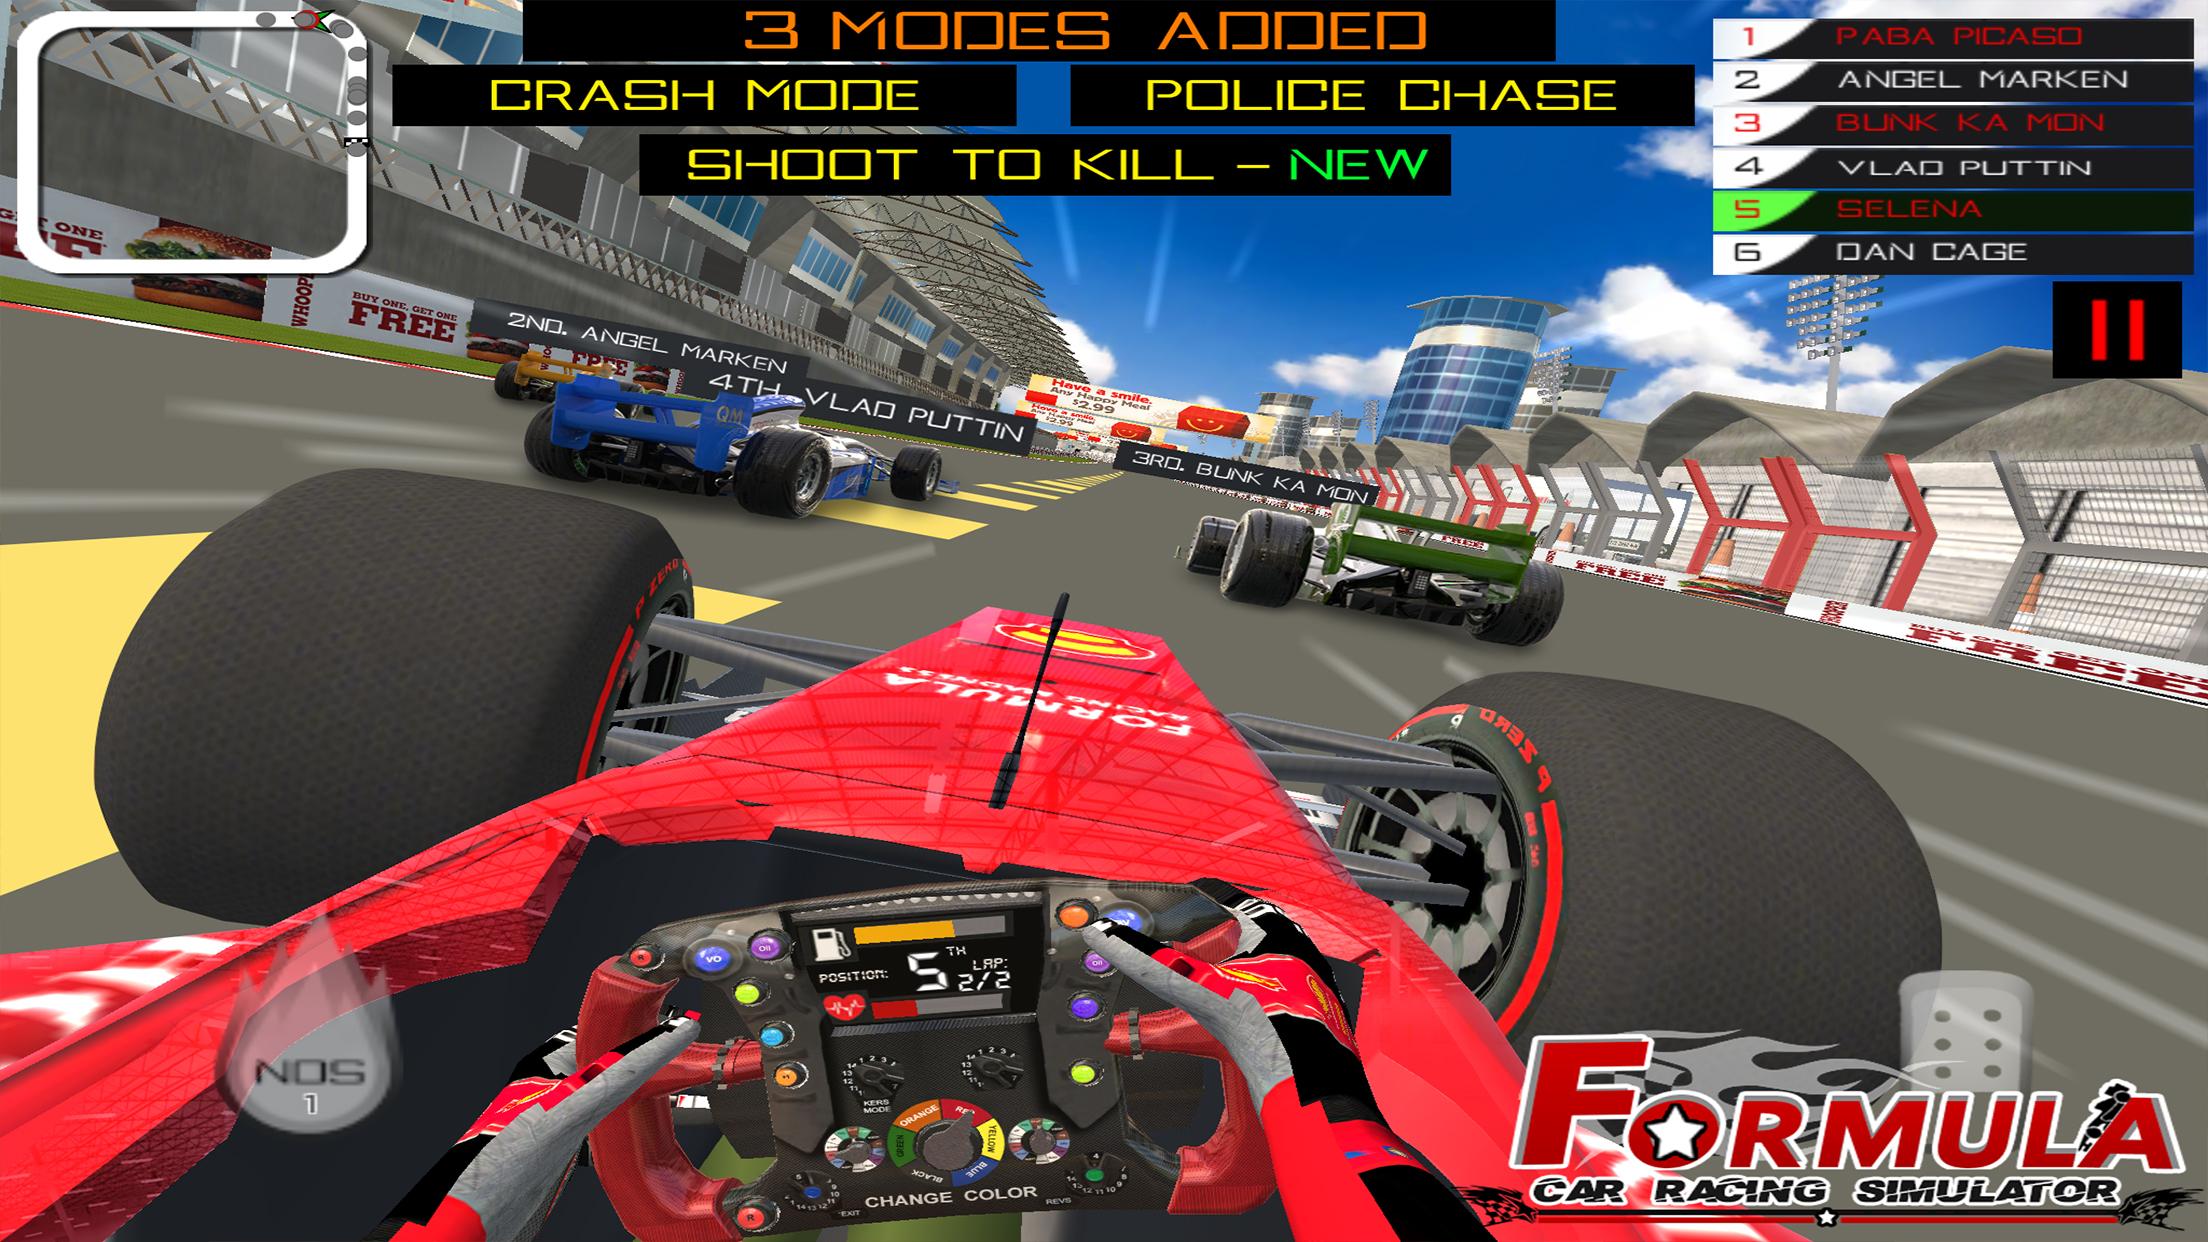 Formula Car Racing Simulator mobile No 1 Race game 16 Screenshot 2